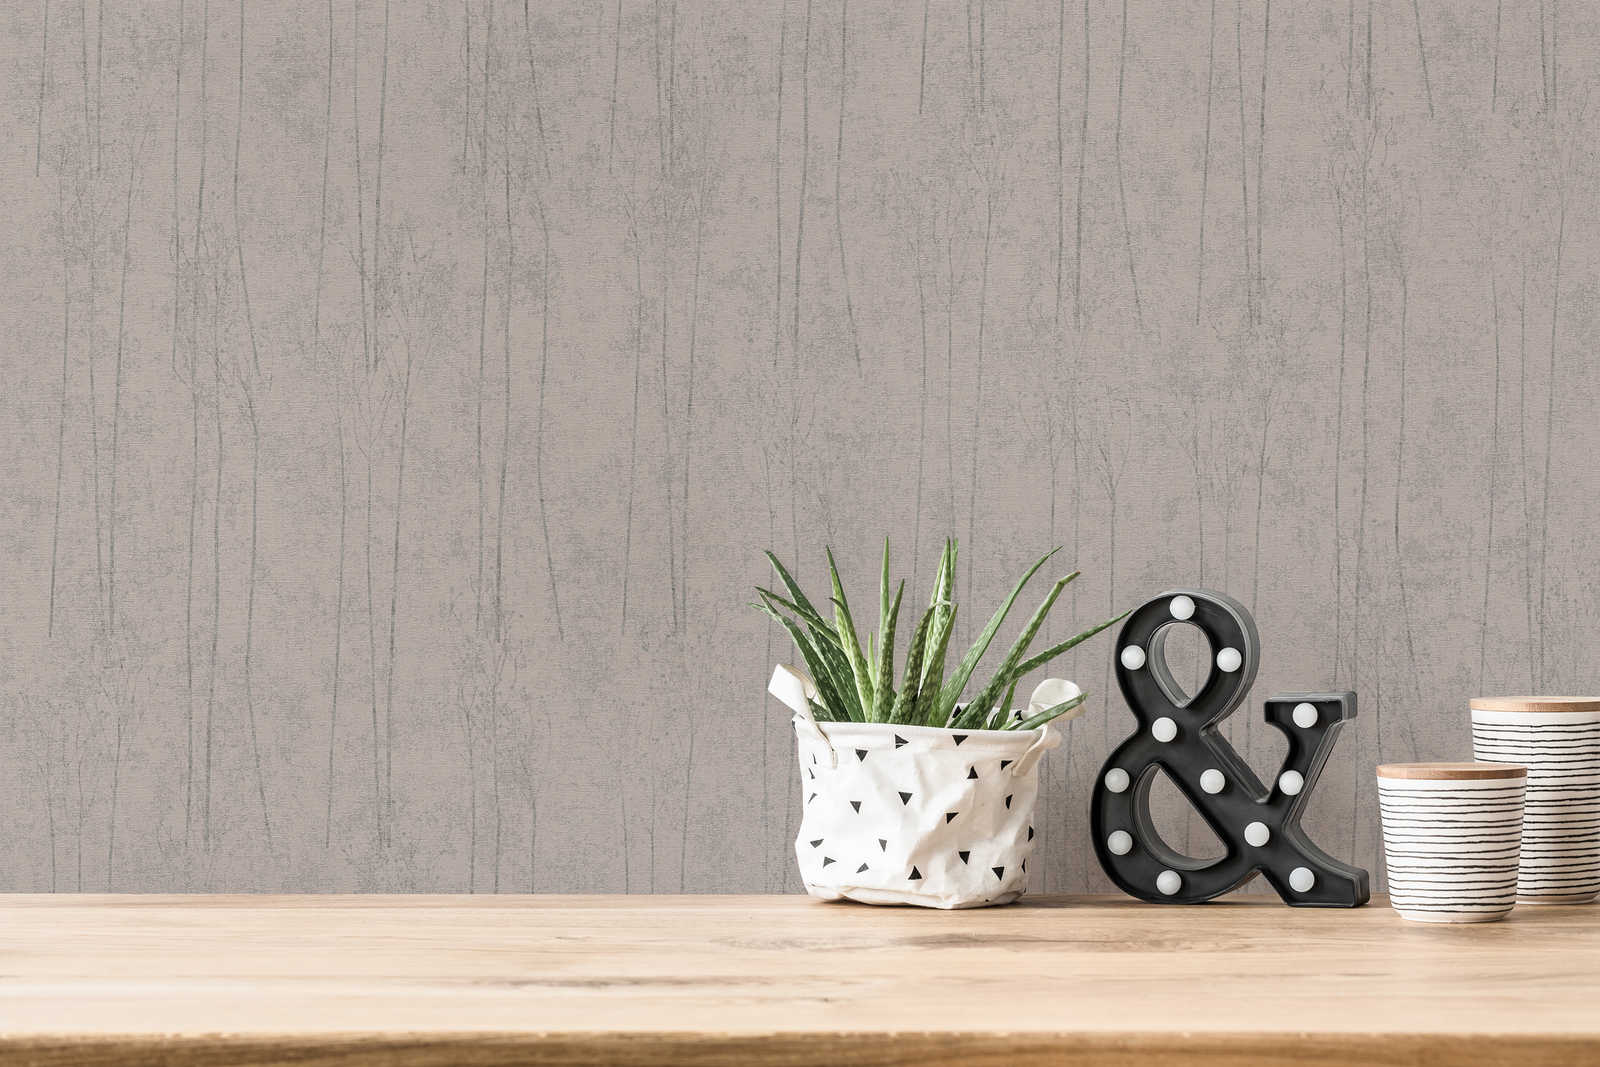             Papel pintado gris no tejido con diseño de naturaleza en estilo escandinavo
        